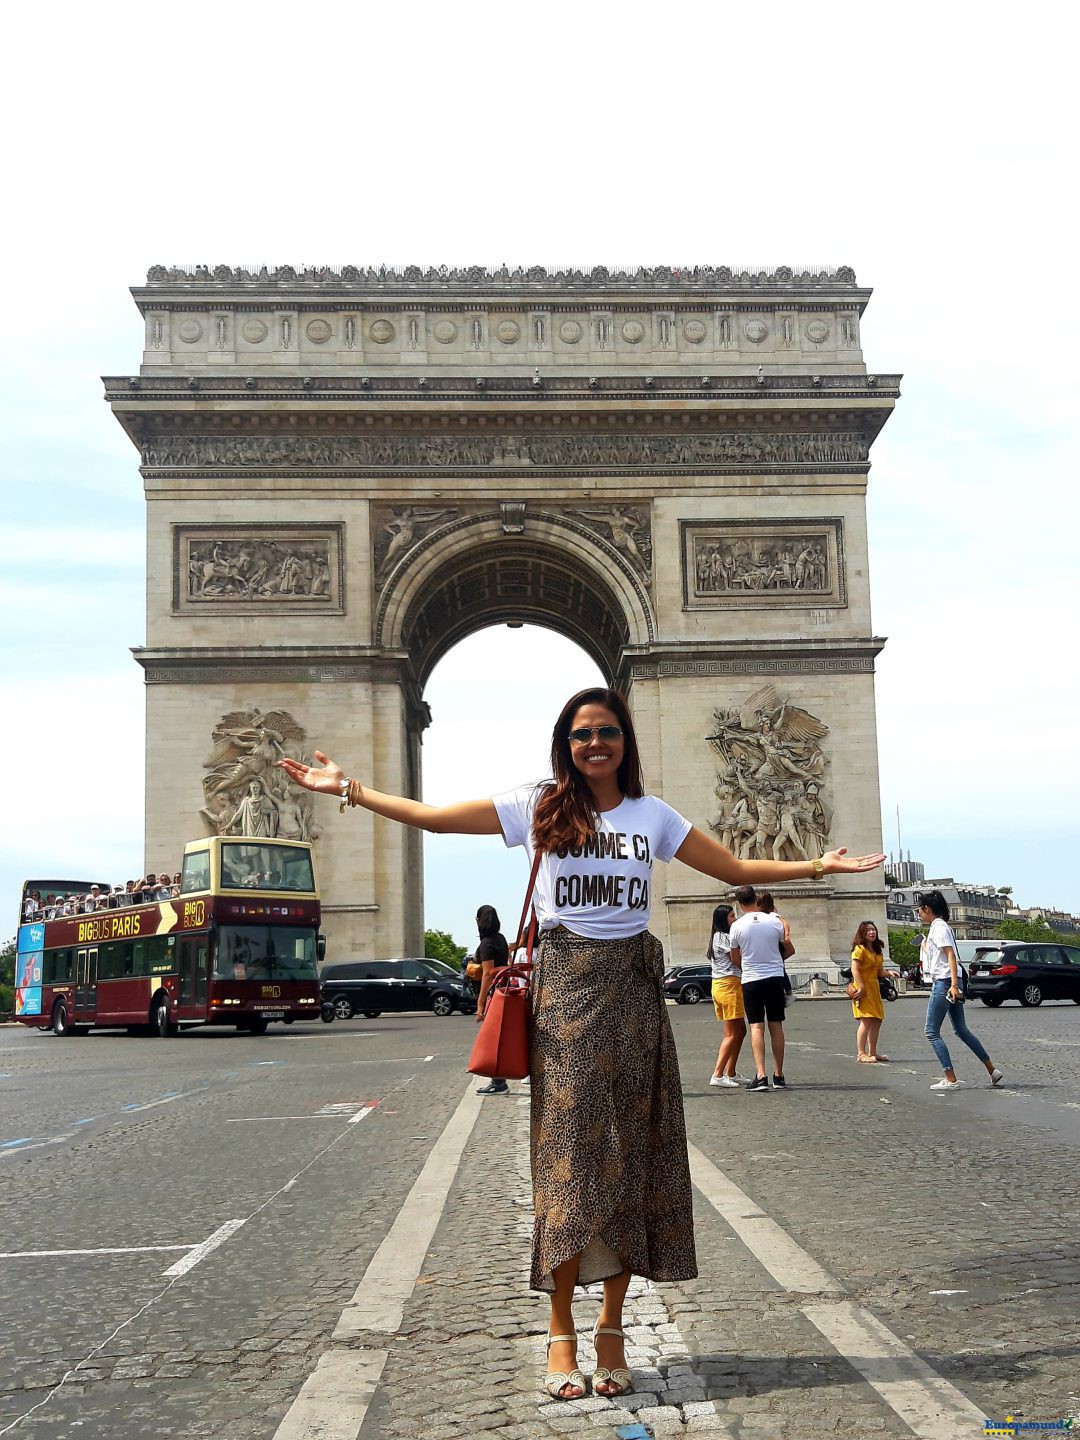 Os suntuosos Arcos do Triunfo,  em Paris!